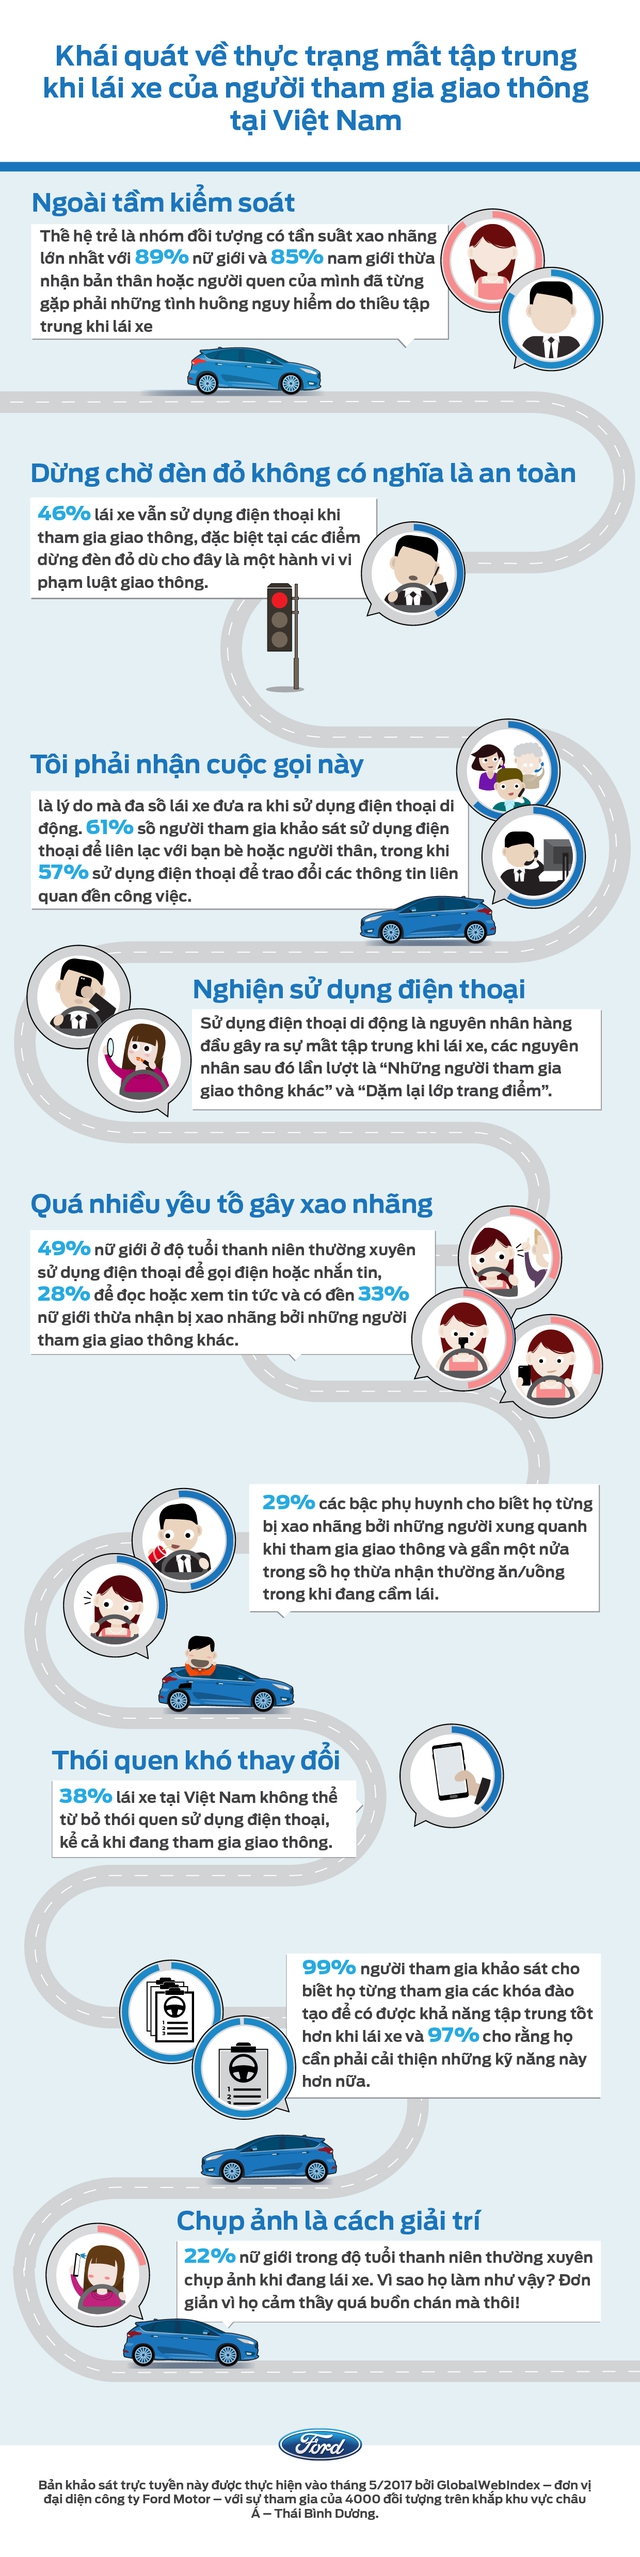 87% giới trẻ Việt Nam gặp tai nạn giao thông do mất tập trung khi lái xe - Ảnh 1.